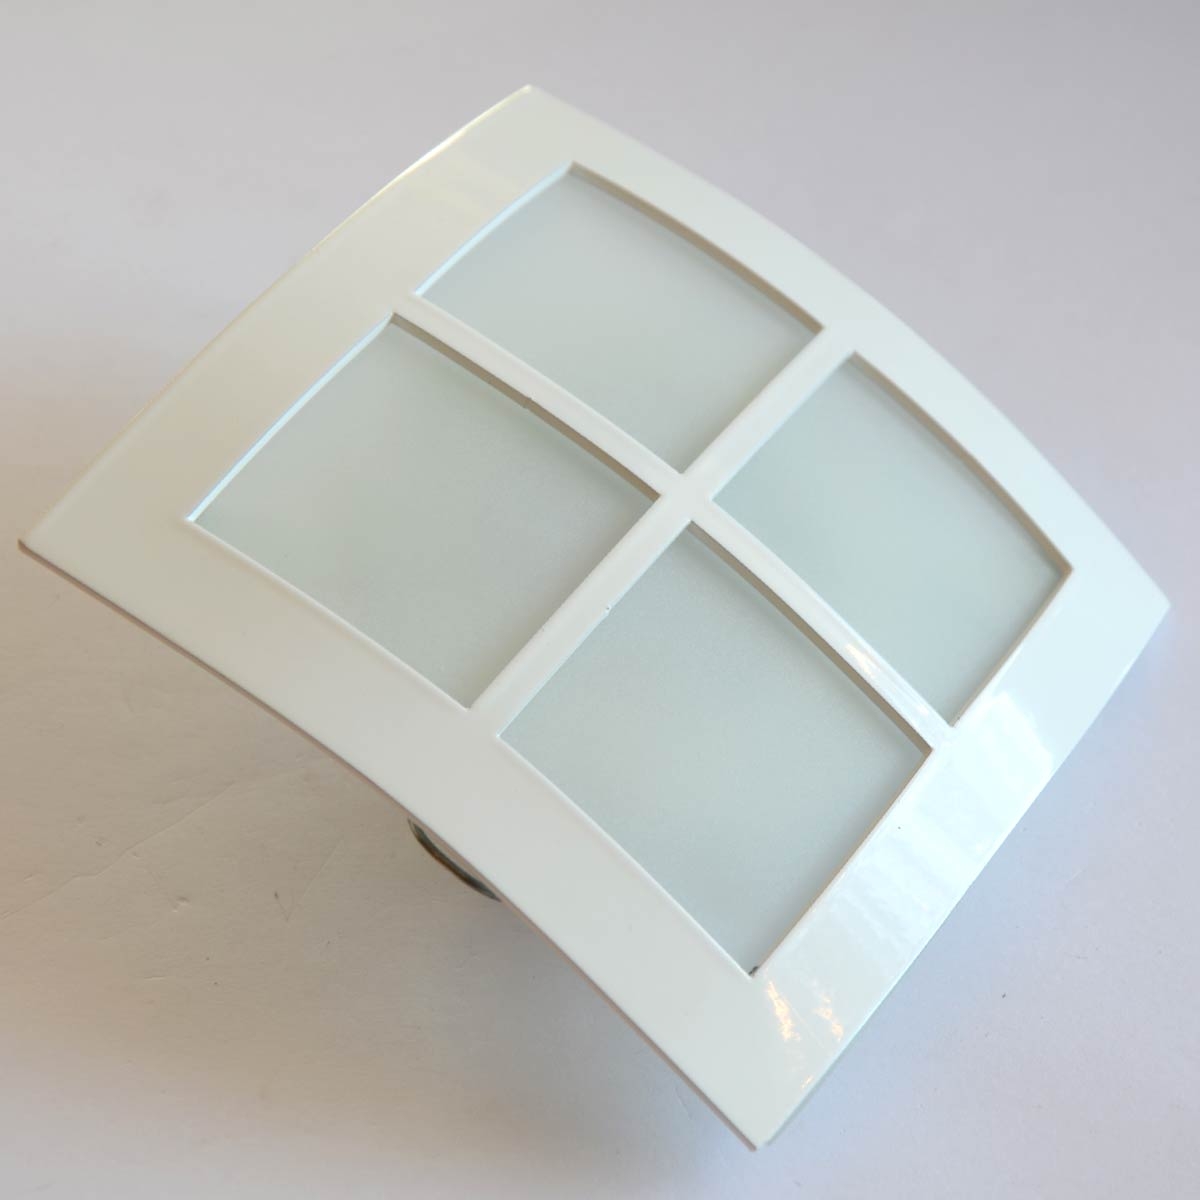 Spain Spot Light Frame Square Fixed APM 1120/08 - White